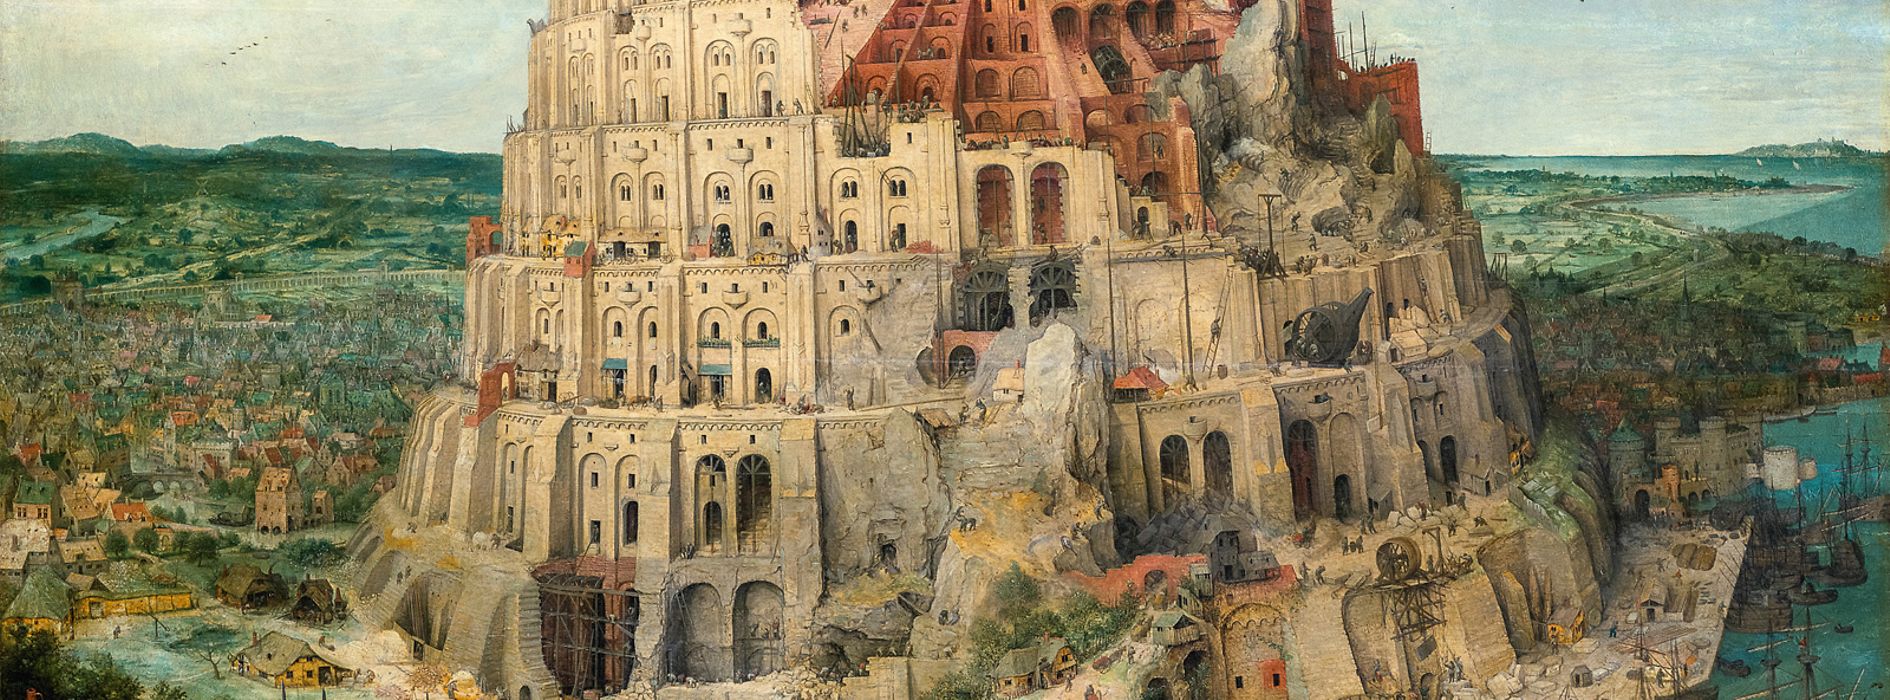 Pieter Bruegel st.: Stavba babylónské věže, 1563, Uměleckohistorické muzeum ve Vídni